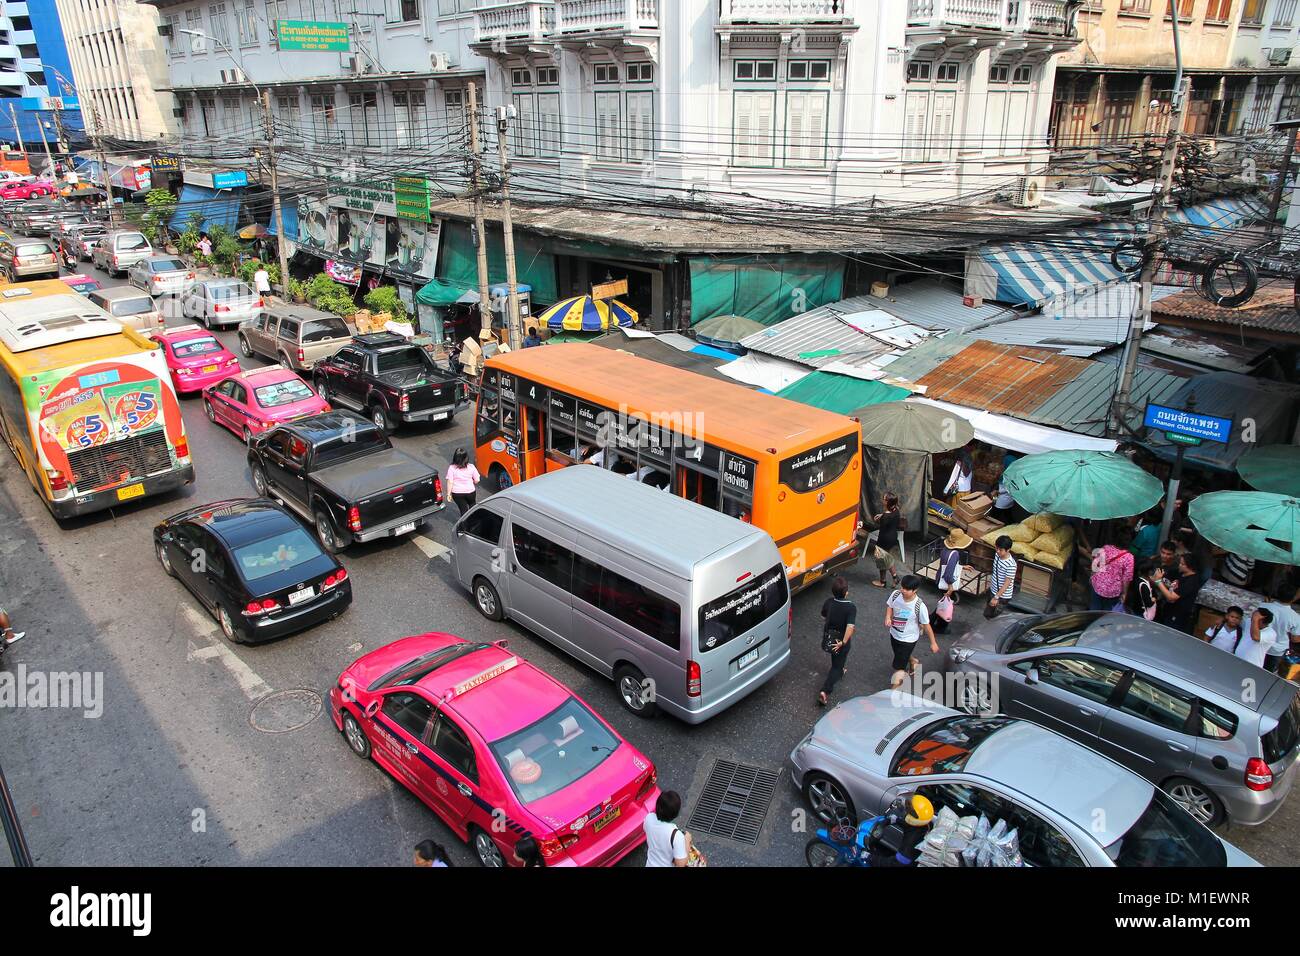 BANGKOK - 7 dicembre: la gente guida nel traffico su dicembre 7, 2013 a Bangkok. Bangkok è la città più grande della Tailandia con 14 milioni di persone livin Foto Stock